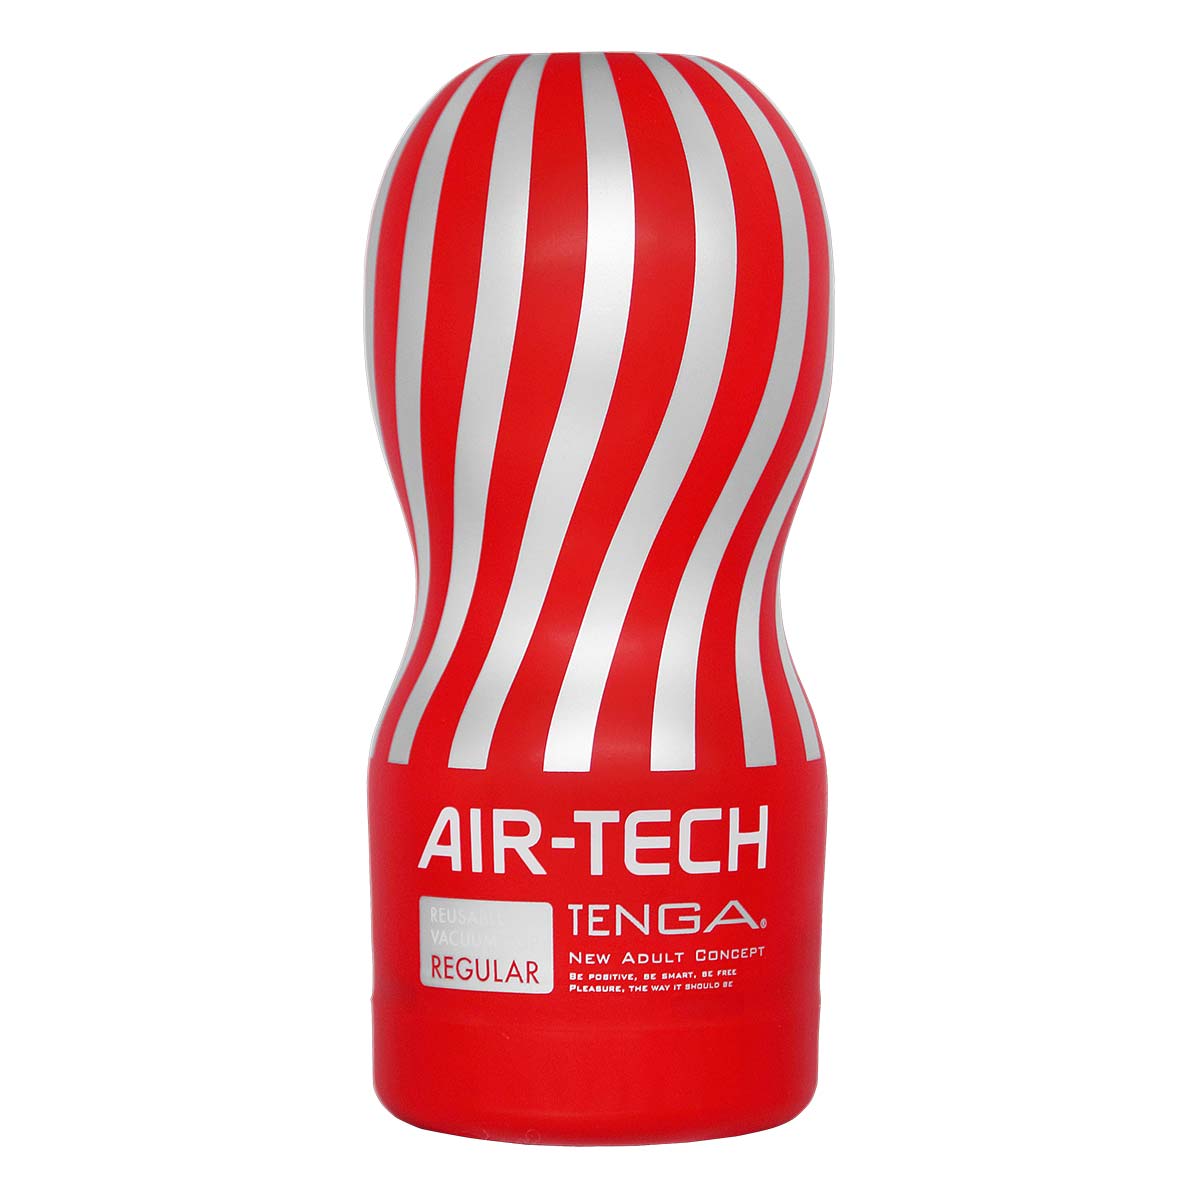 TENGA AIR-TECH 重複使用型真空杯 標準型